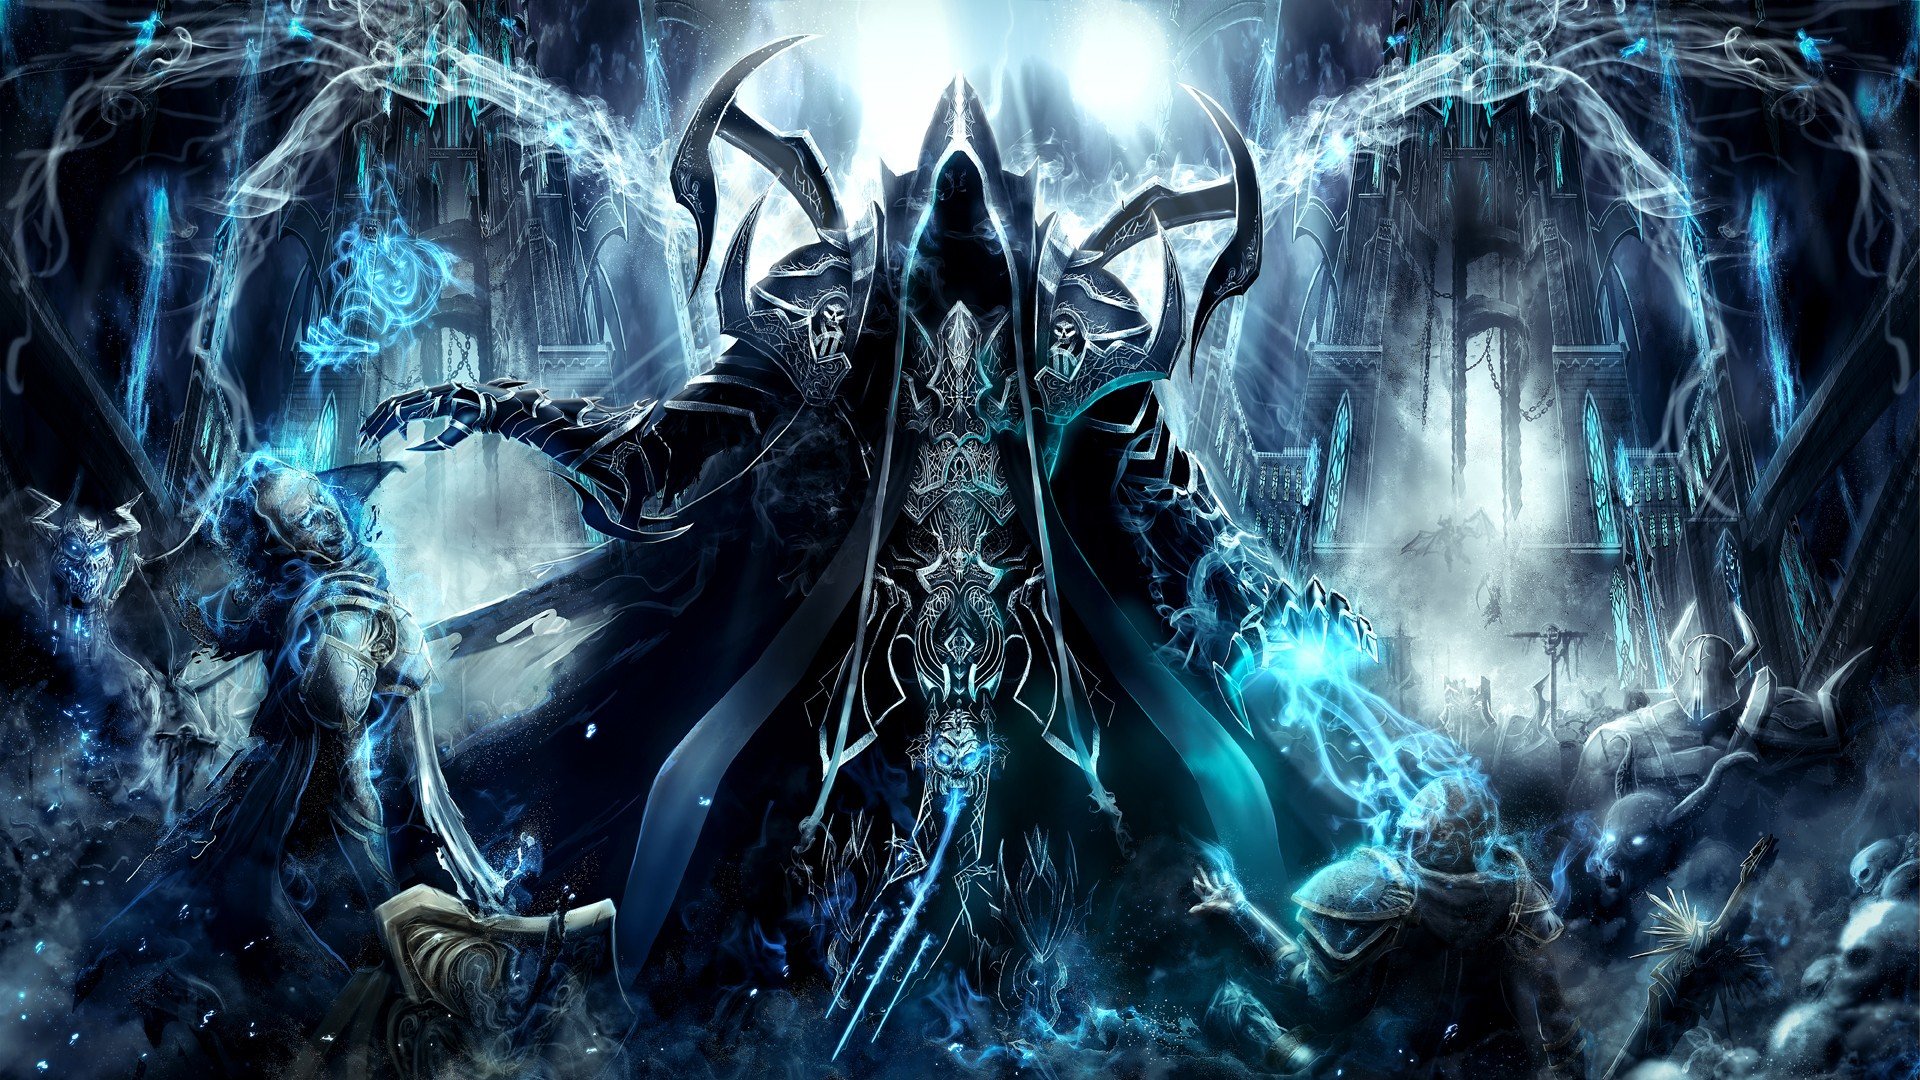 diablo 3 reaper of souls pc code